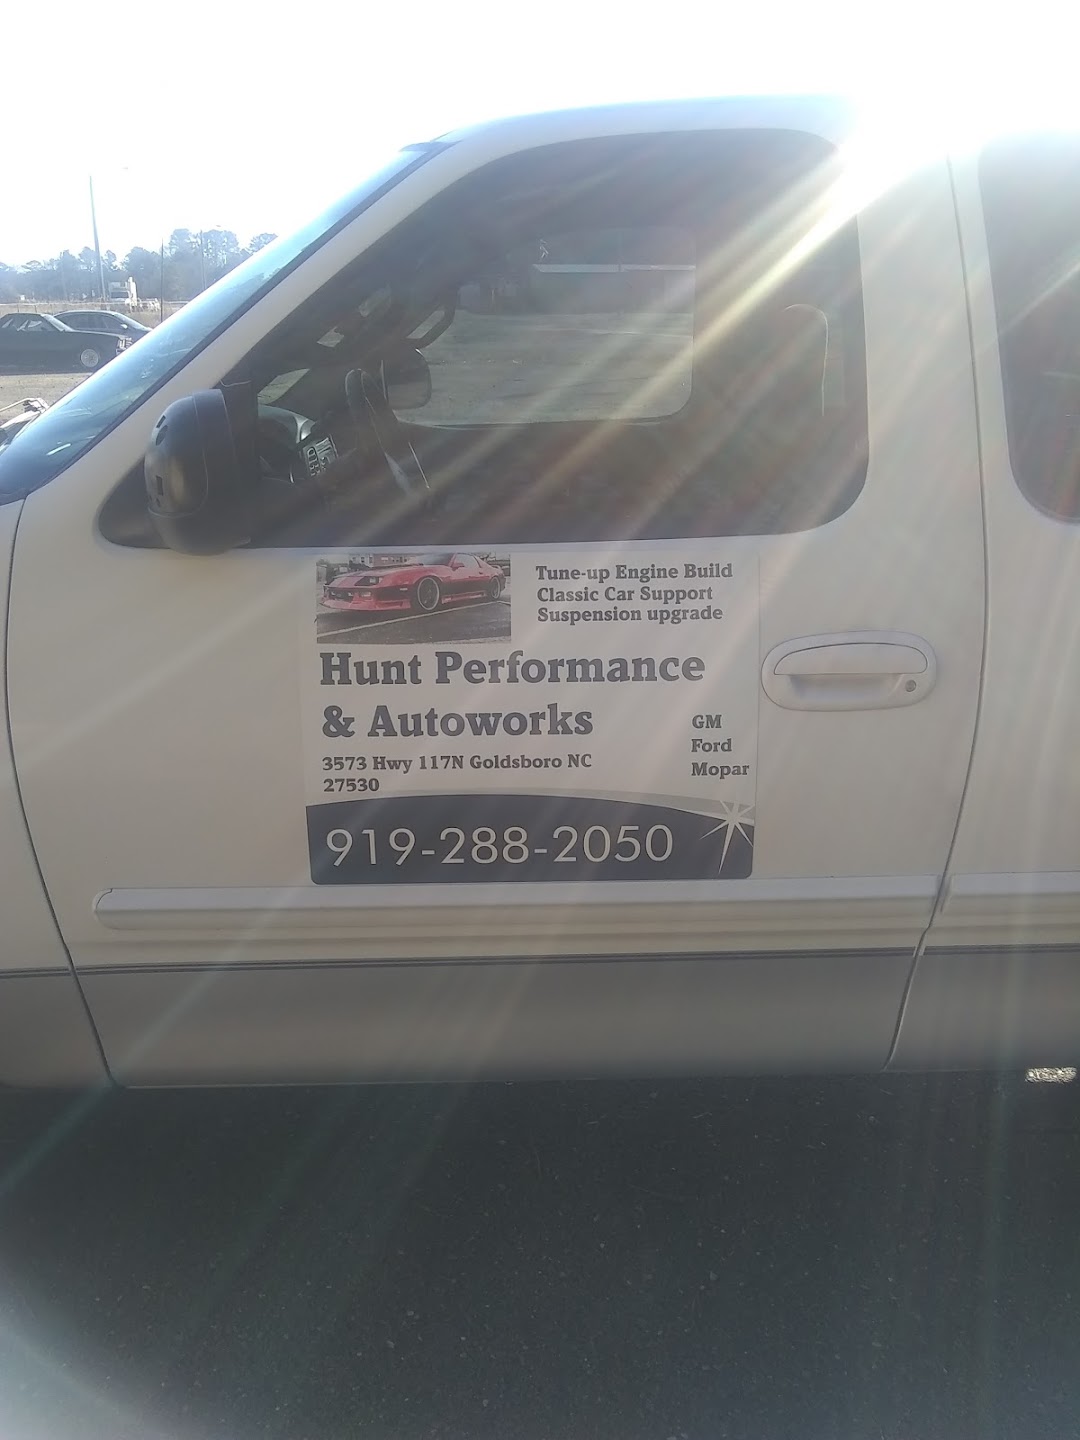 Hunt Performance & Autoworks